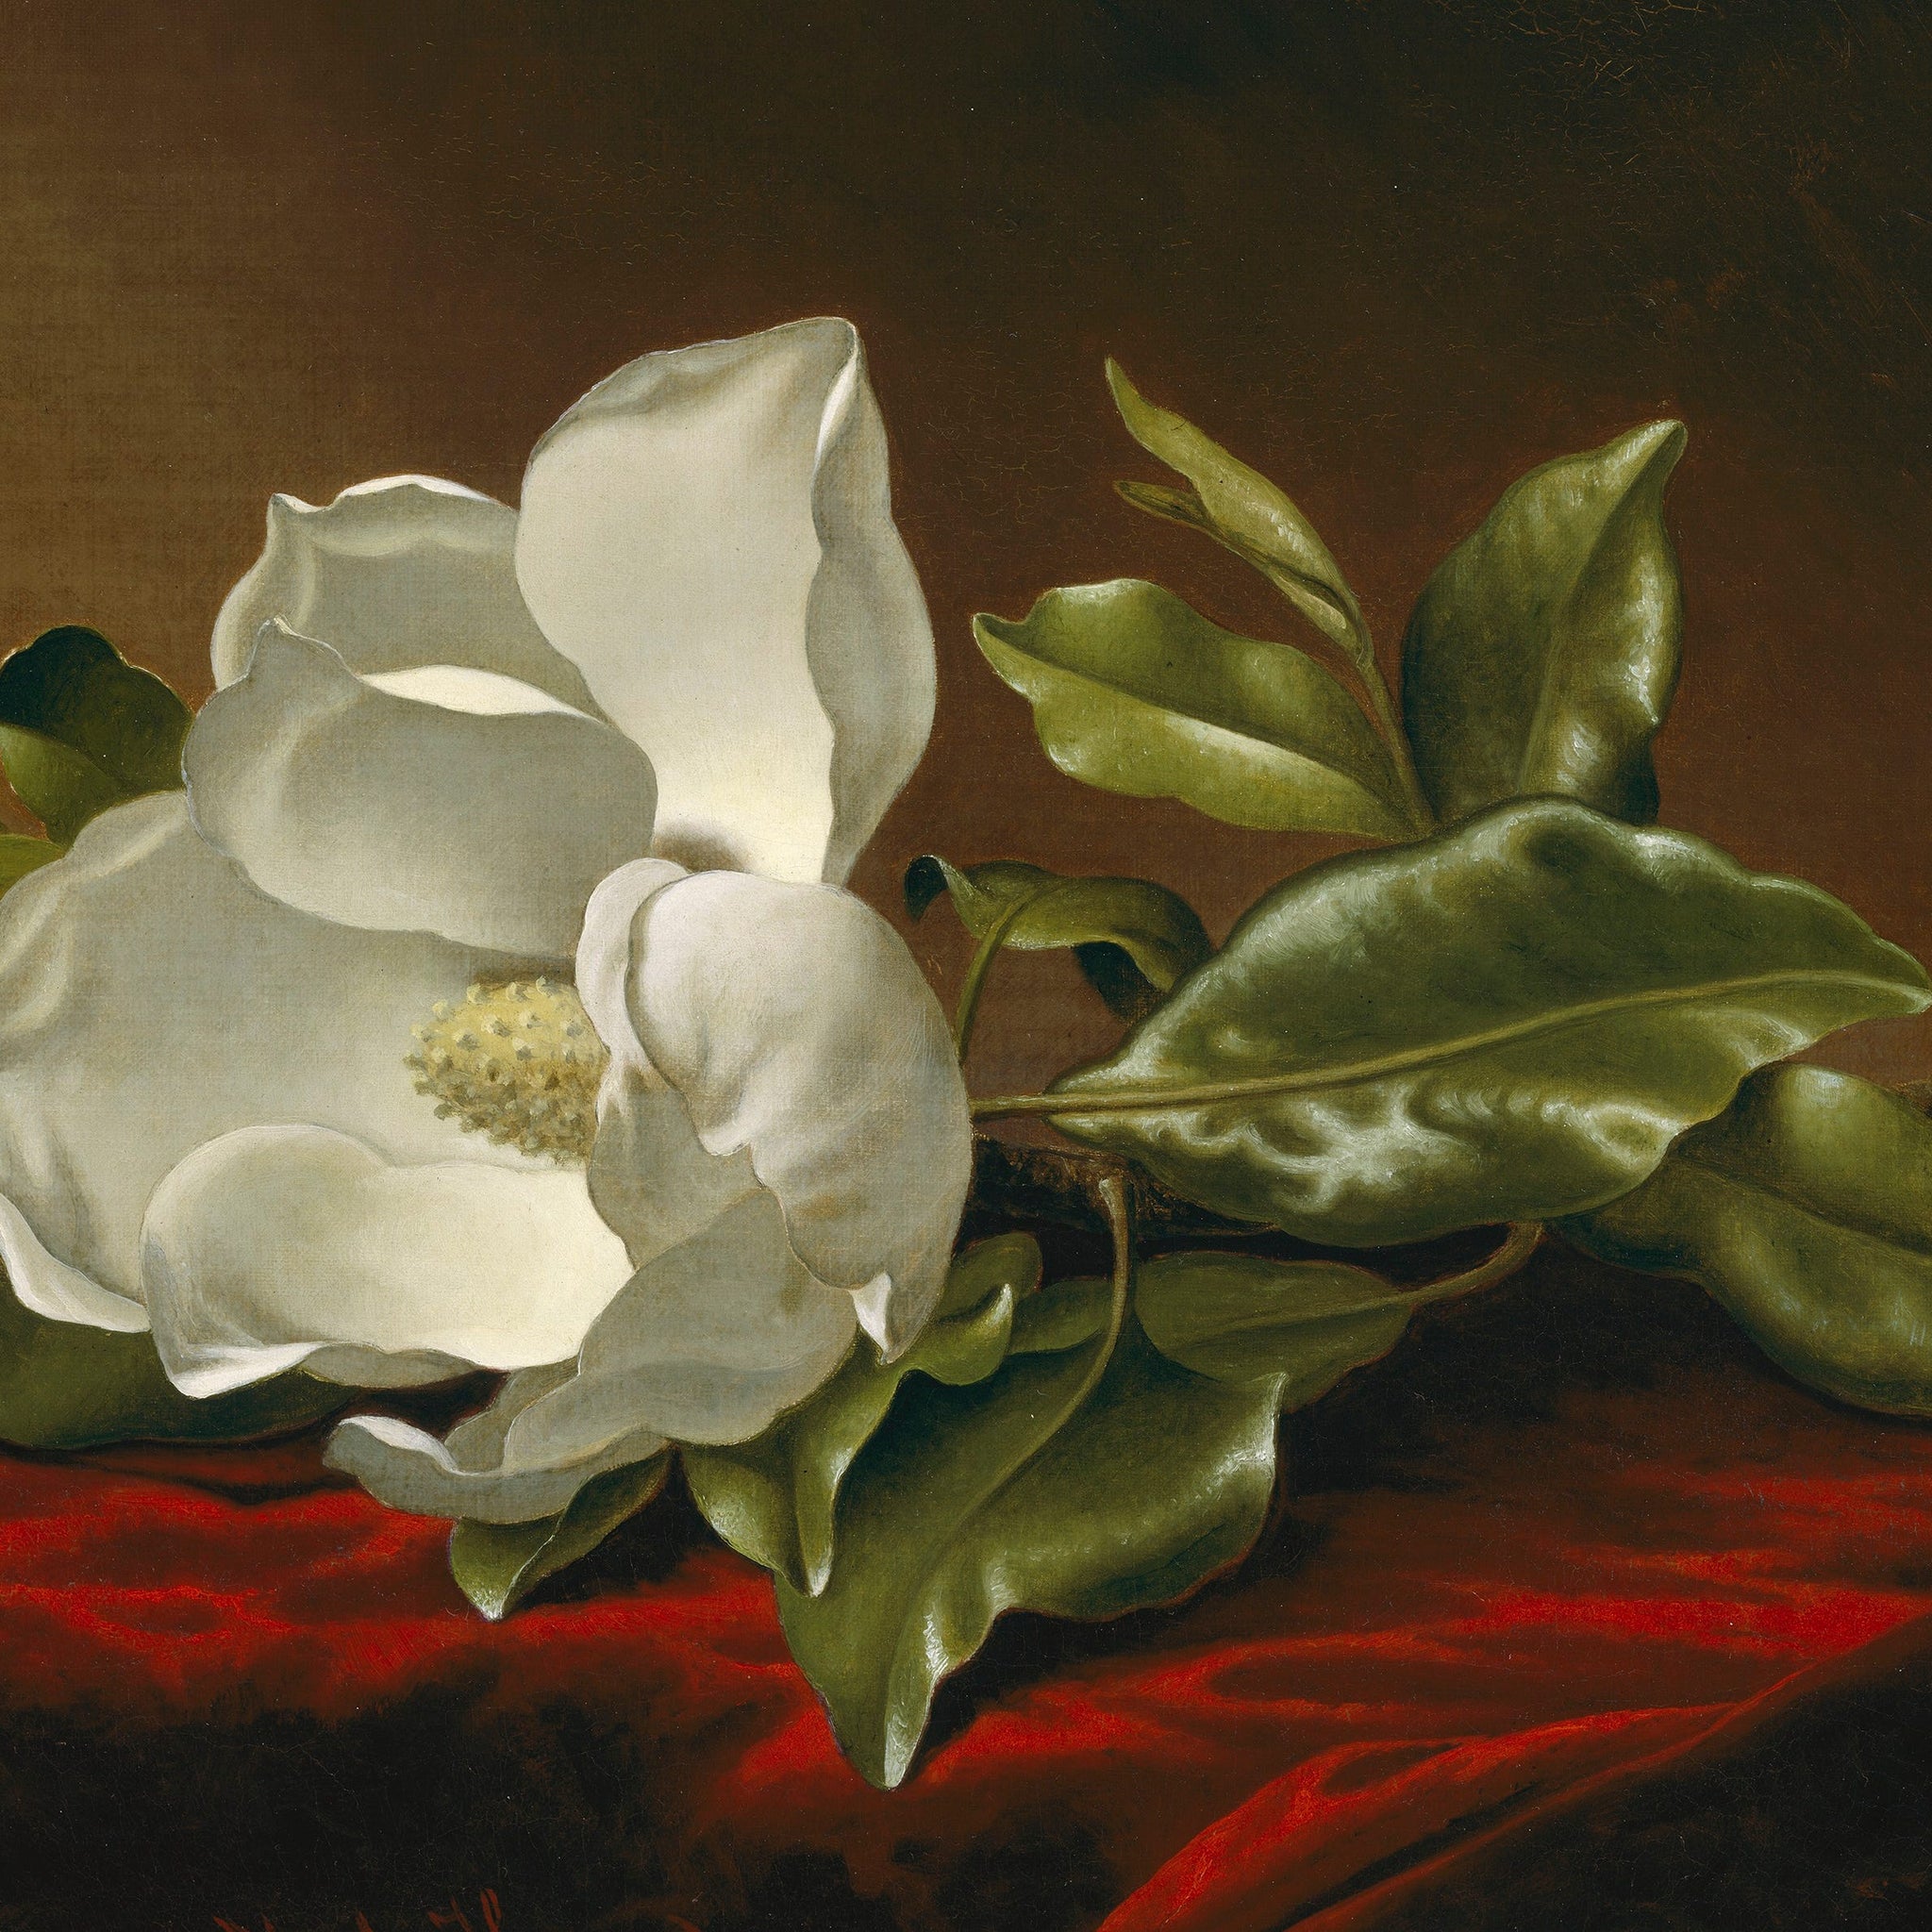 Magnolia Grandiflora - Martin Johnson Heade